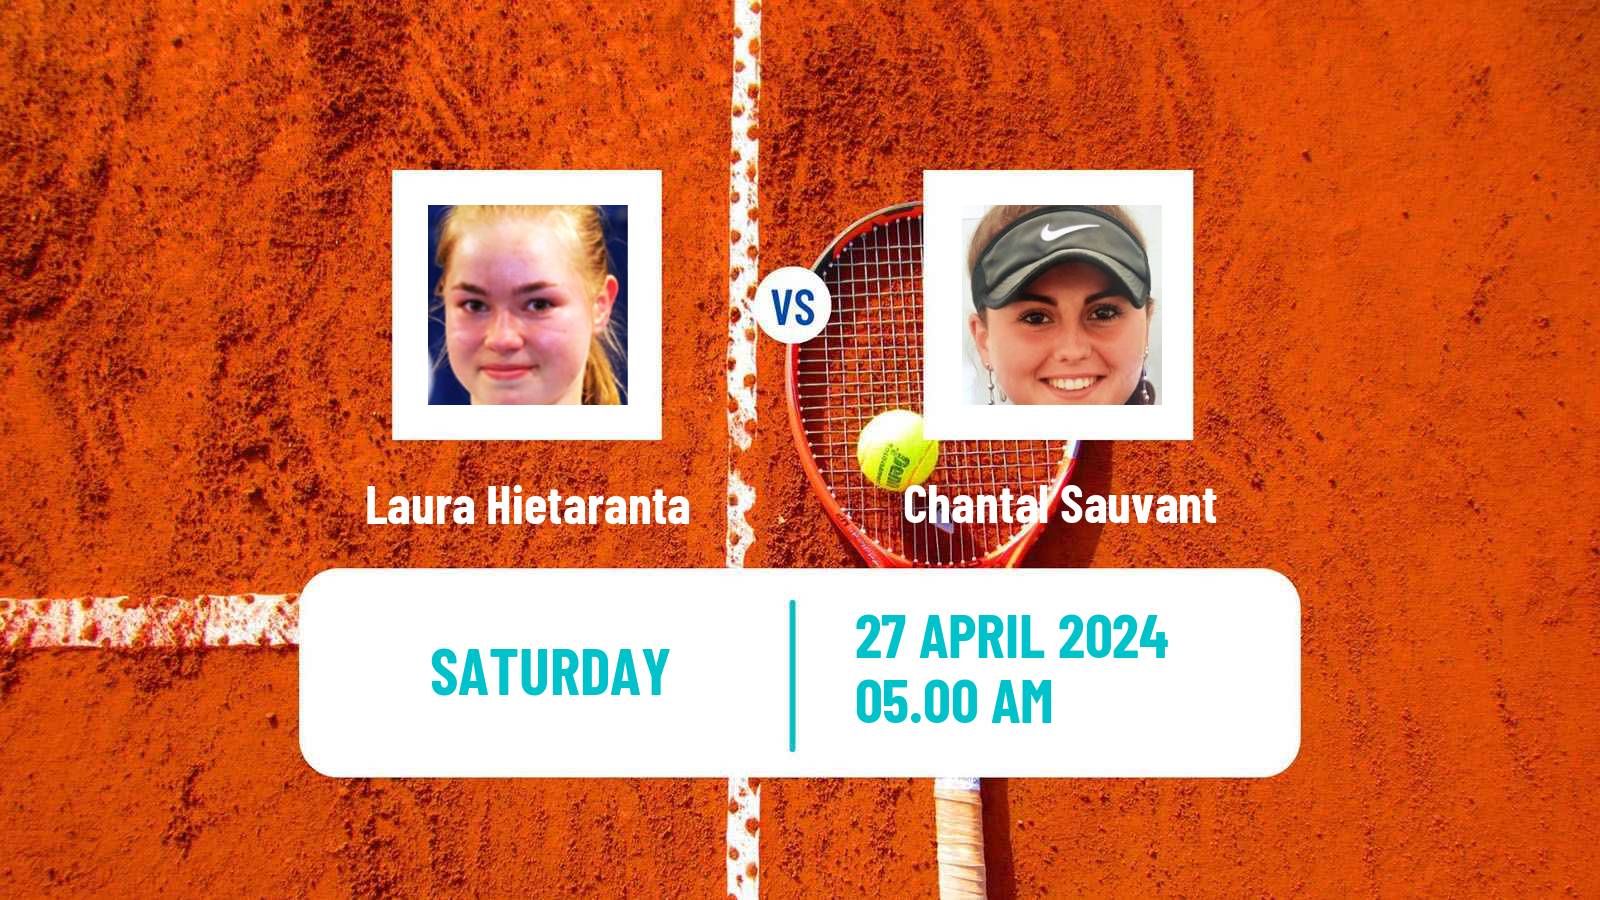 Tennis ITF W15 Antalya 11 Women Laura Hietaranta - Chantal Sauvant